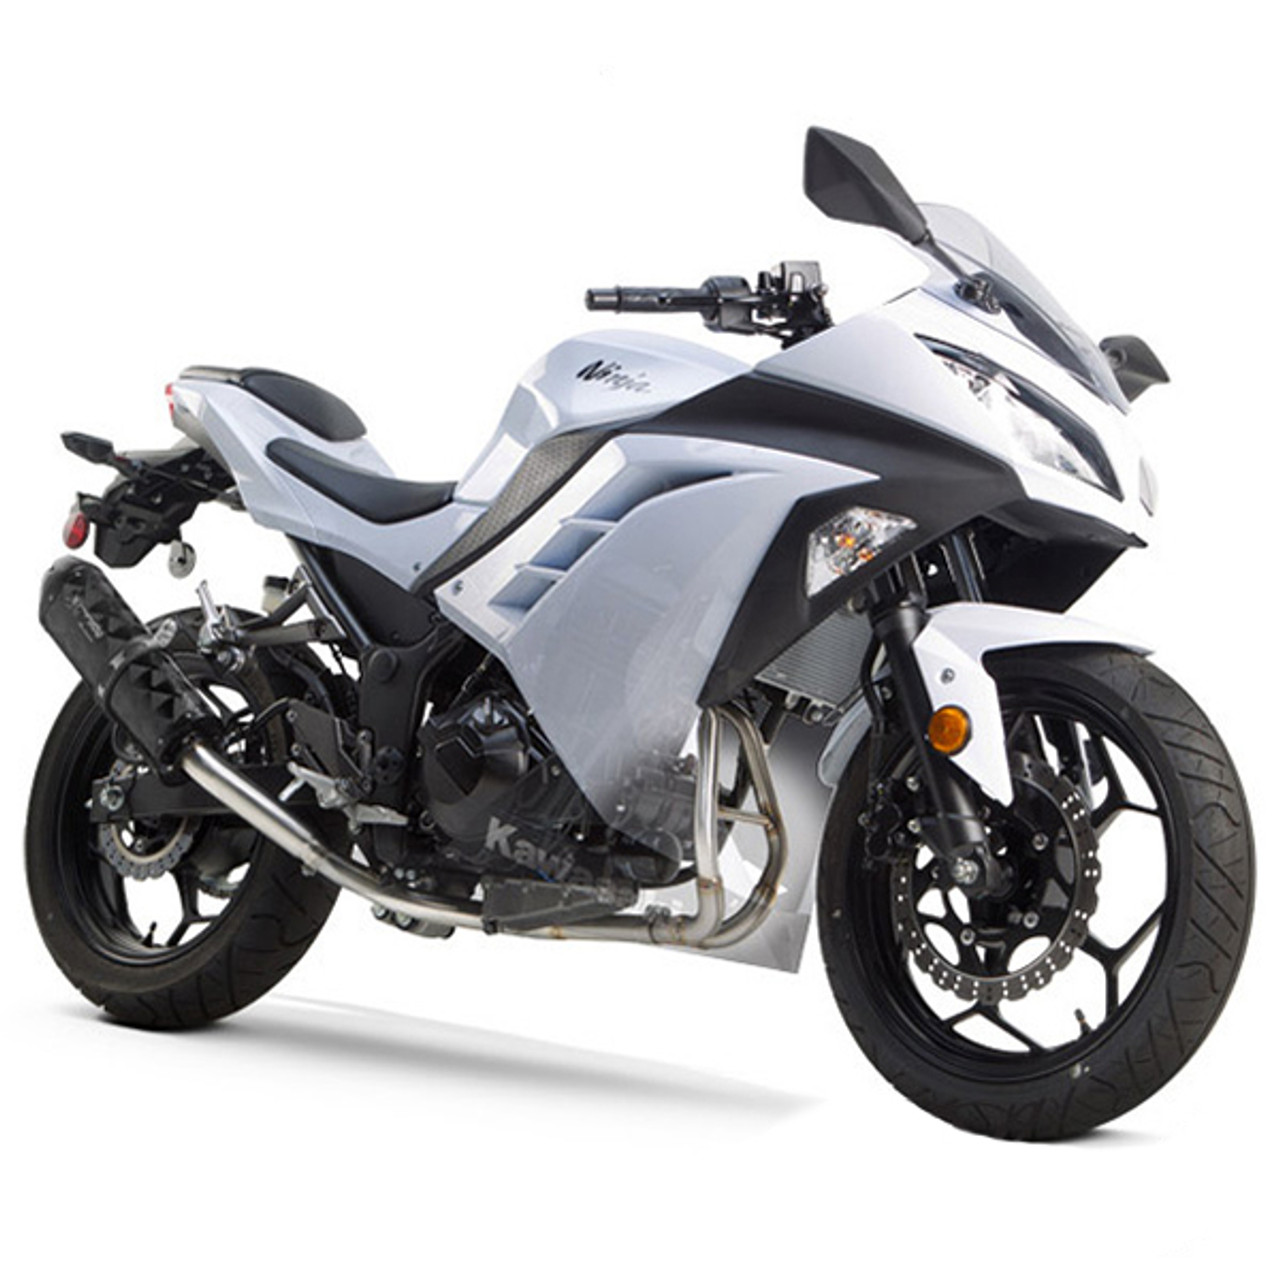 Two Brothers Kawasaki Ninja 300 13-17 Series Full Exhaust System - Sportbike Gear